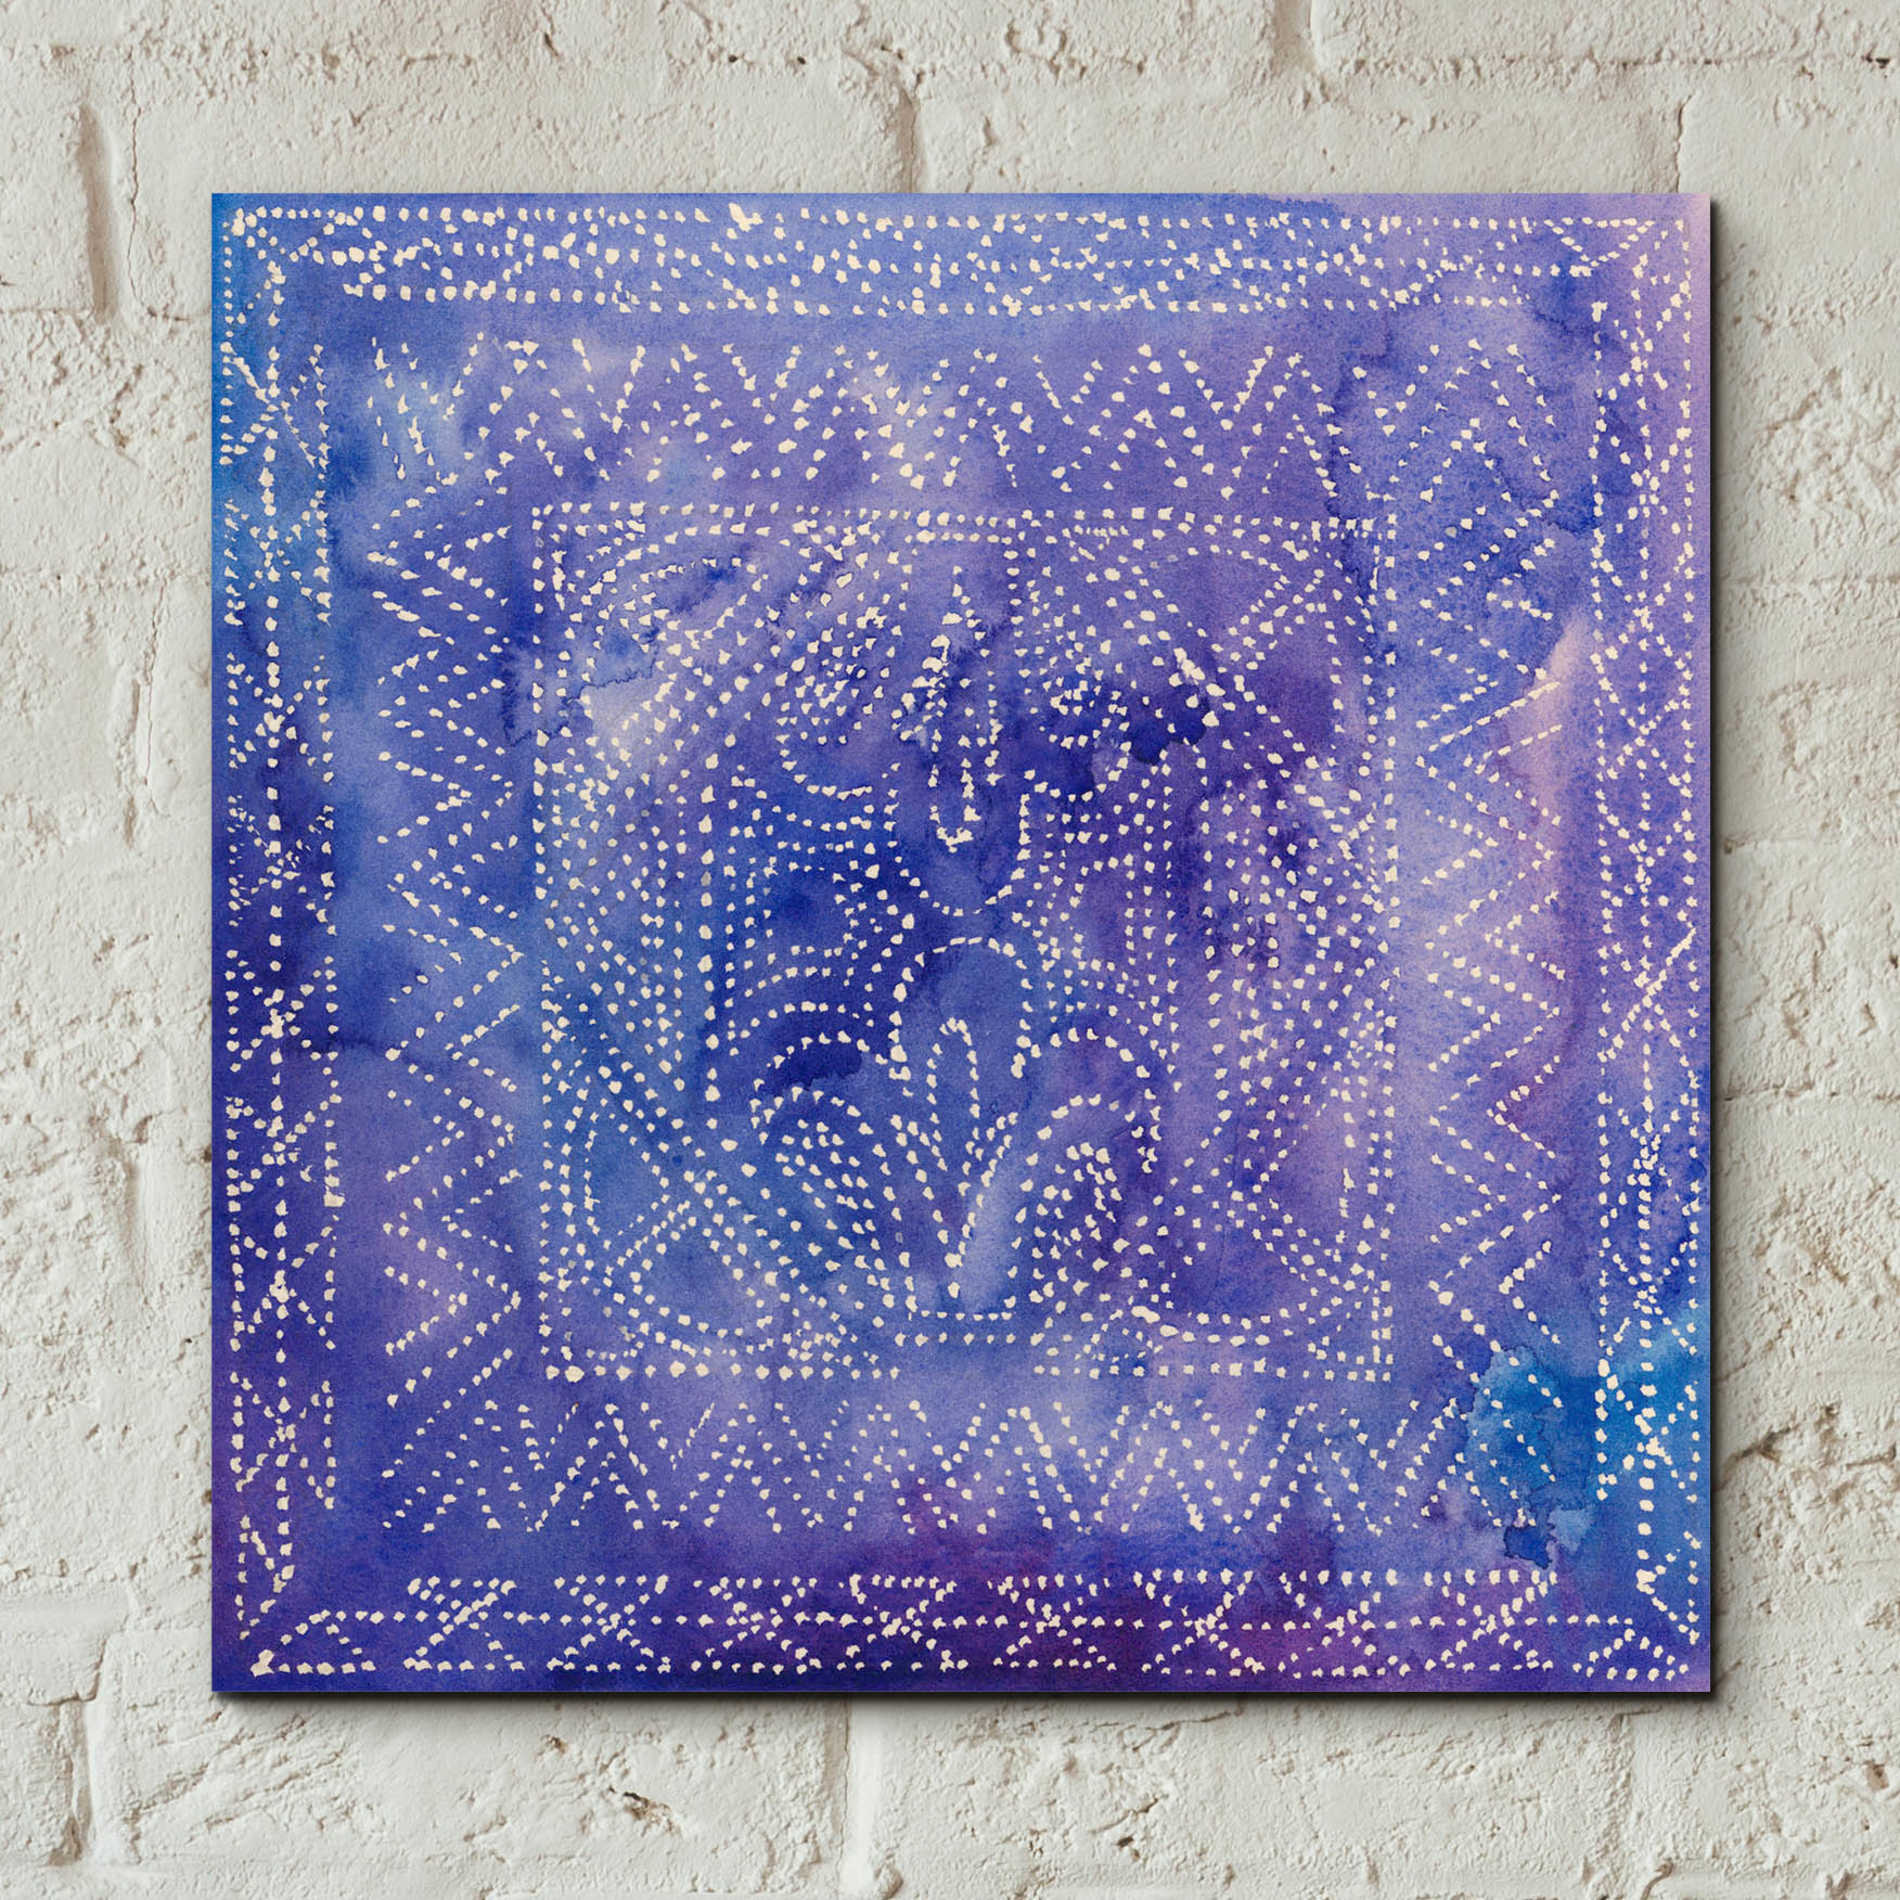 Epic Art 'Batik Nebula II' by Grace Popp, Acrylic Glass Wall Art,12x12